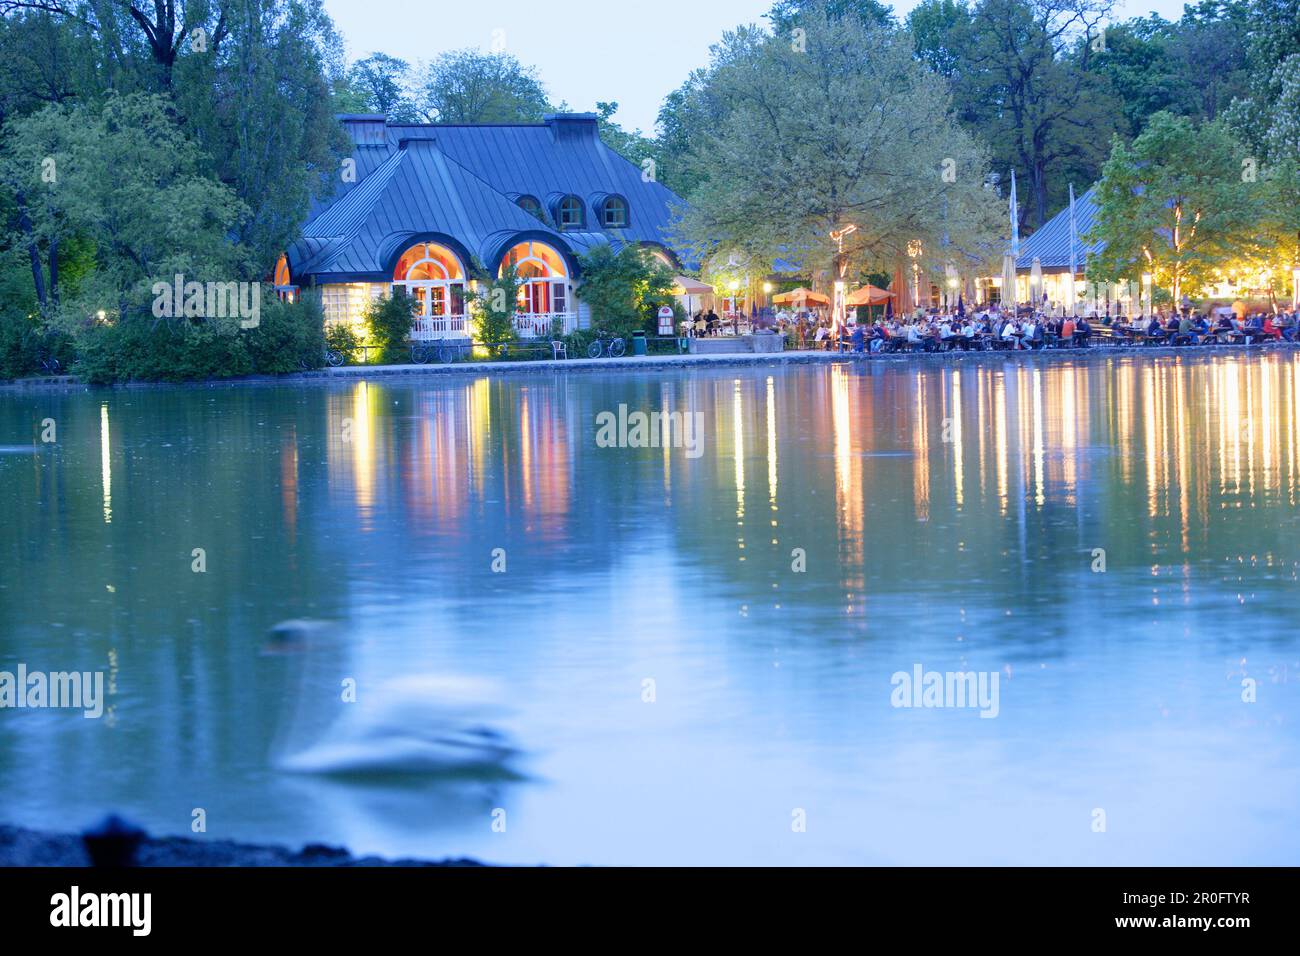 People enjoying themselves at beer garden Seehaus at lake Kleinhesseloher See, English Garden, Munich, Bavaria, Germany Stock Photo